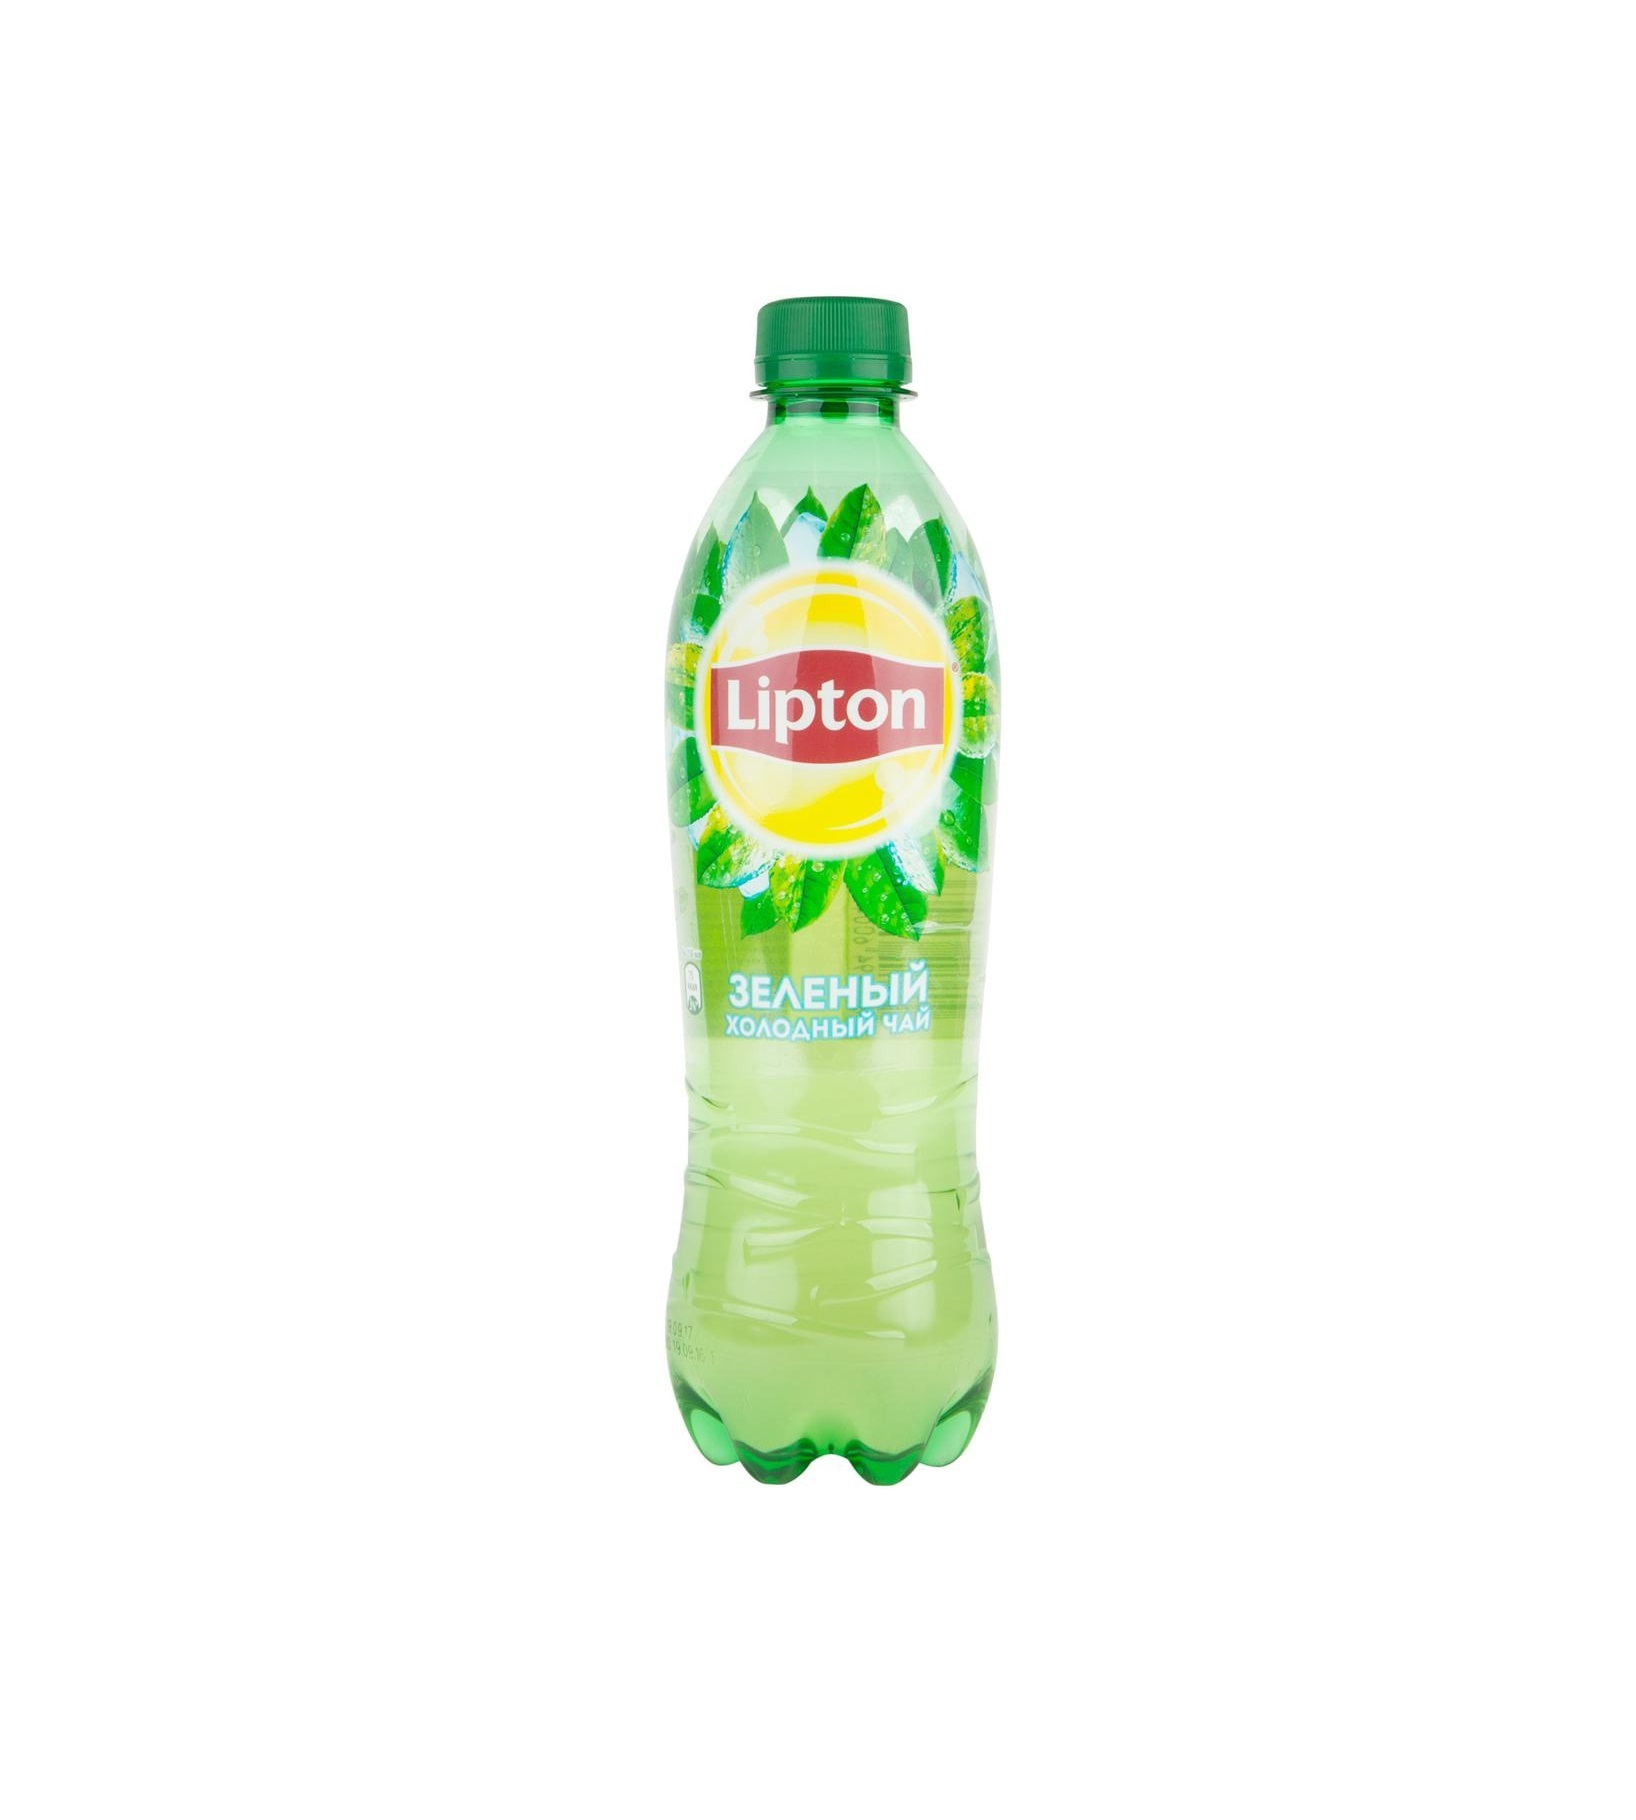 Липтон зеленый бутылка. Липтон 0,5 зеленый. Липтон 0,5 зелёный 0.5. Липтон зеленый 05. Липтон зел 0,5.